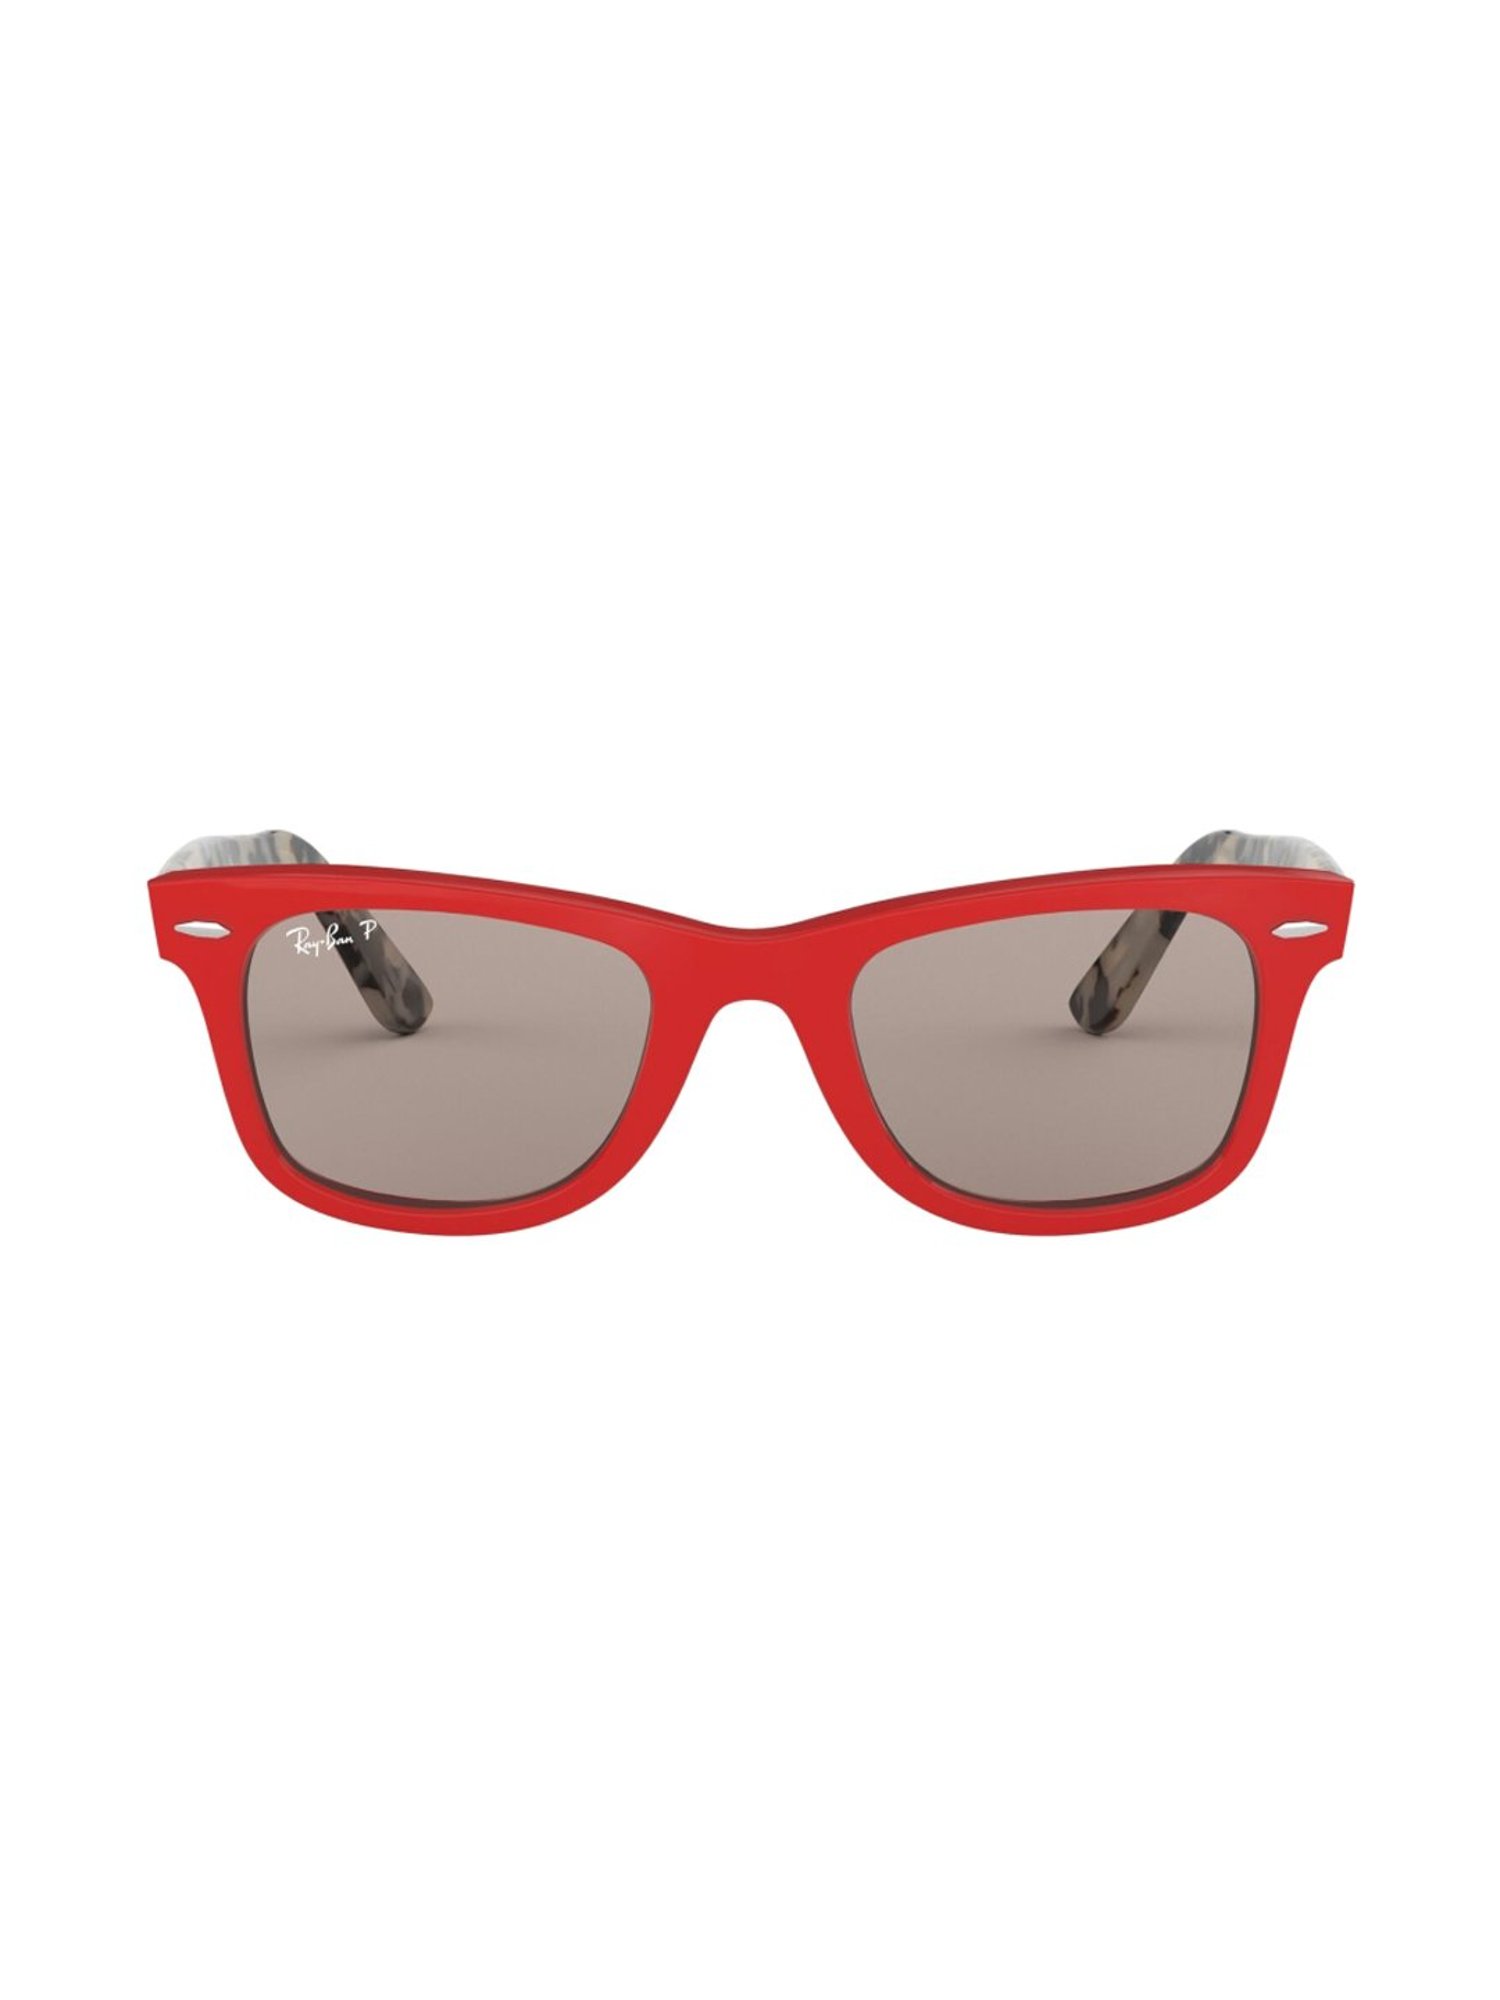 Ray-Ban Sunglasses Wayfarer RB 2140 | Vision Express